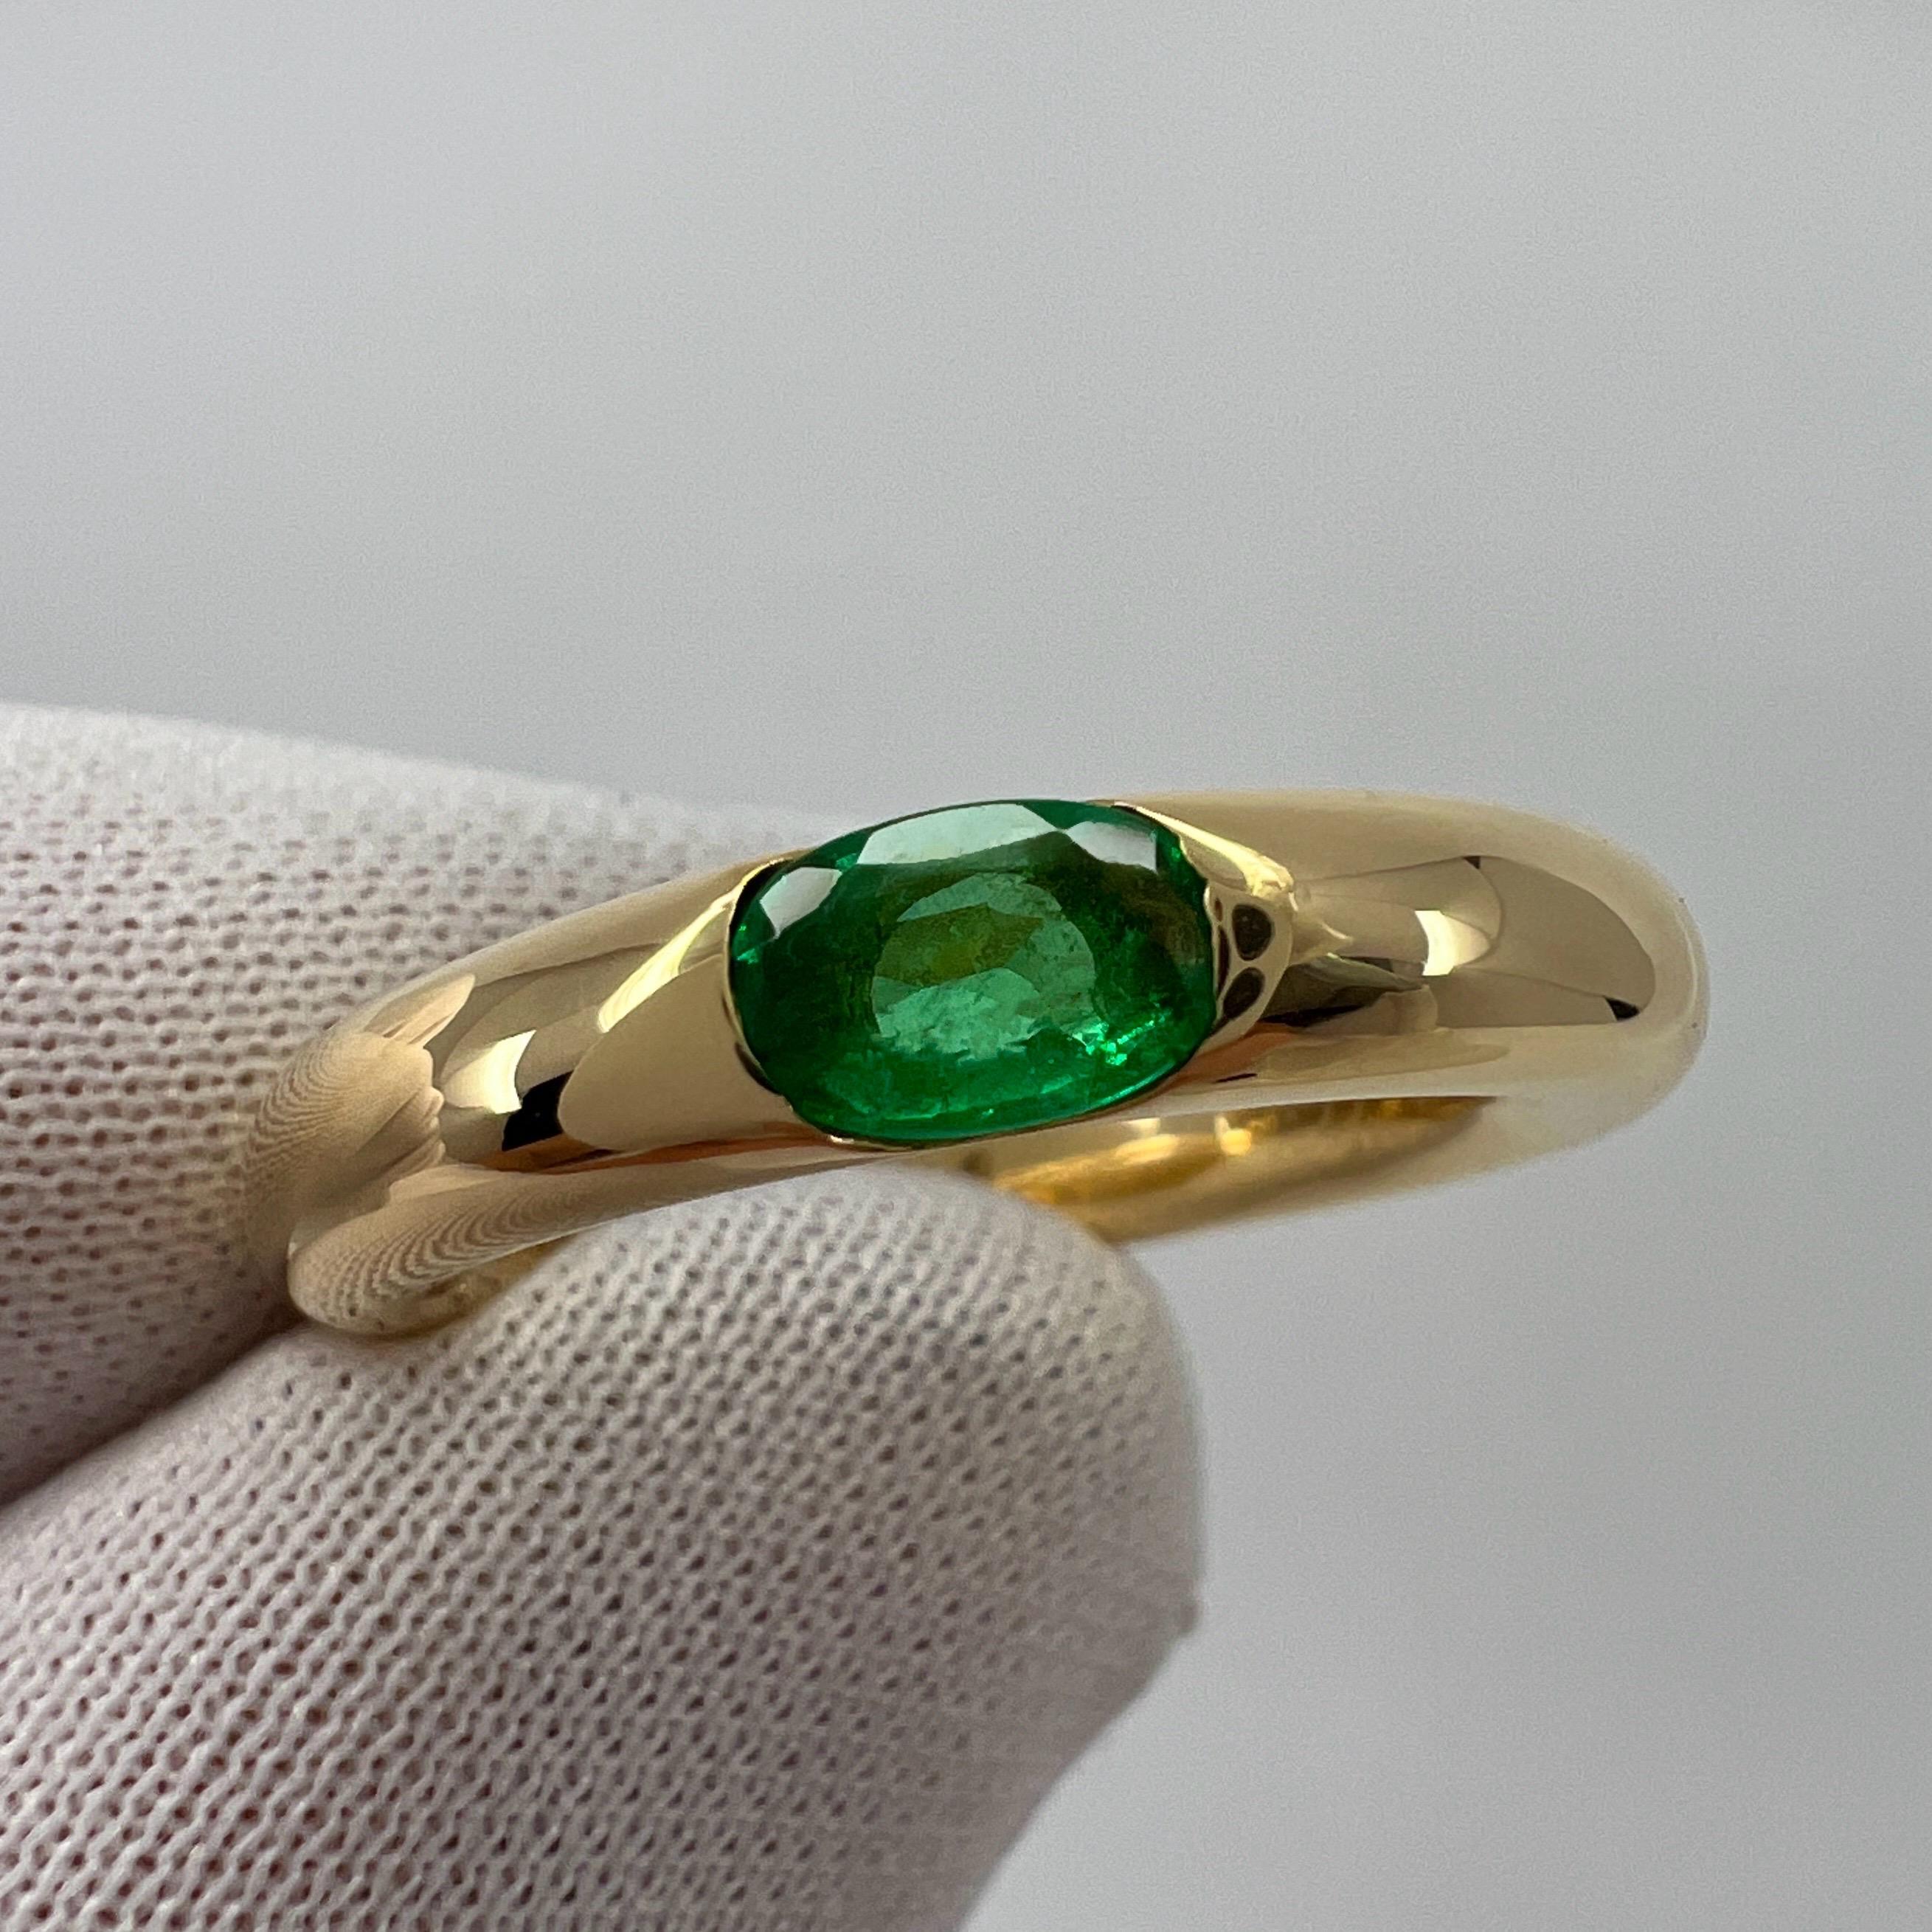 Vintage Cartier Vivid Green Emerald 18k Yellow Gold Solitaire Ring.

Superbe bague Cartier en or jaune sertie d'une fine émeraude vert vif. Les maisons de haute joaillerie comme Cartier n'utilisent que les pierres les plus fines et cette émeraude ne